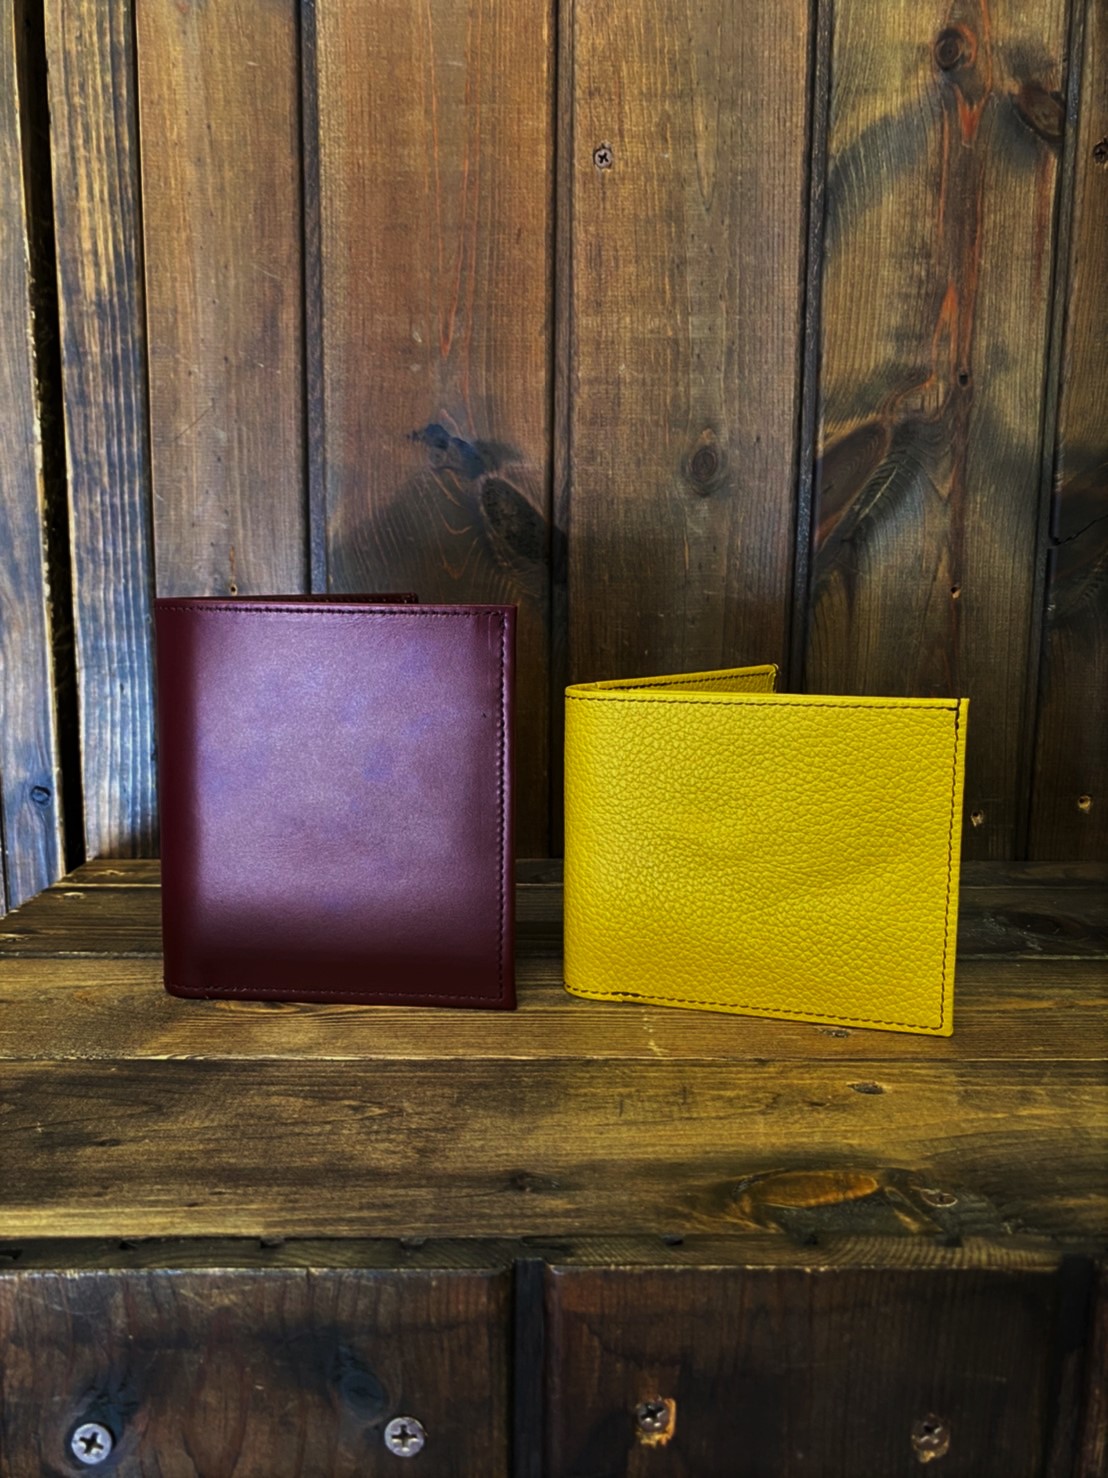 神戸元町のオーダーメード店創作鞄槌井が製作したオーダーメイド二つ折り財布